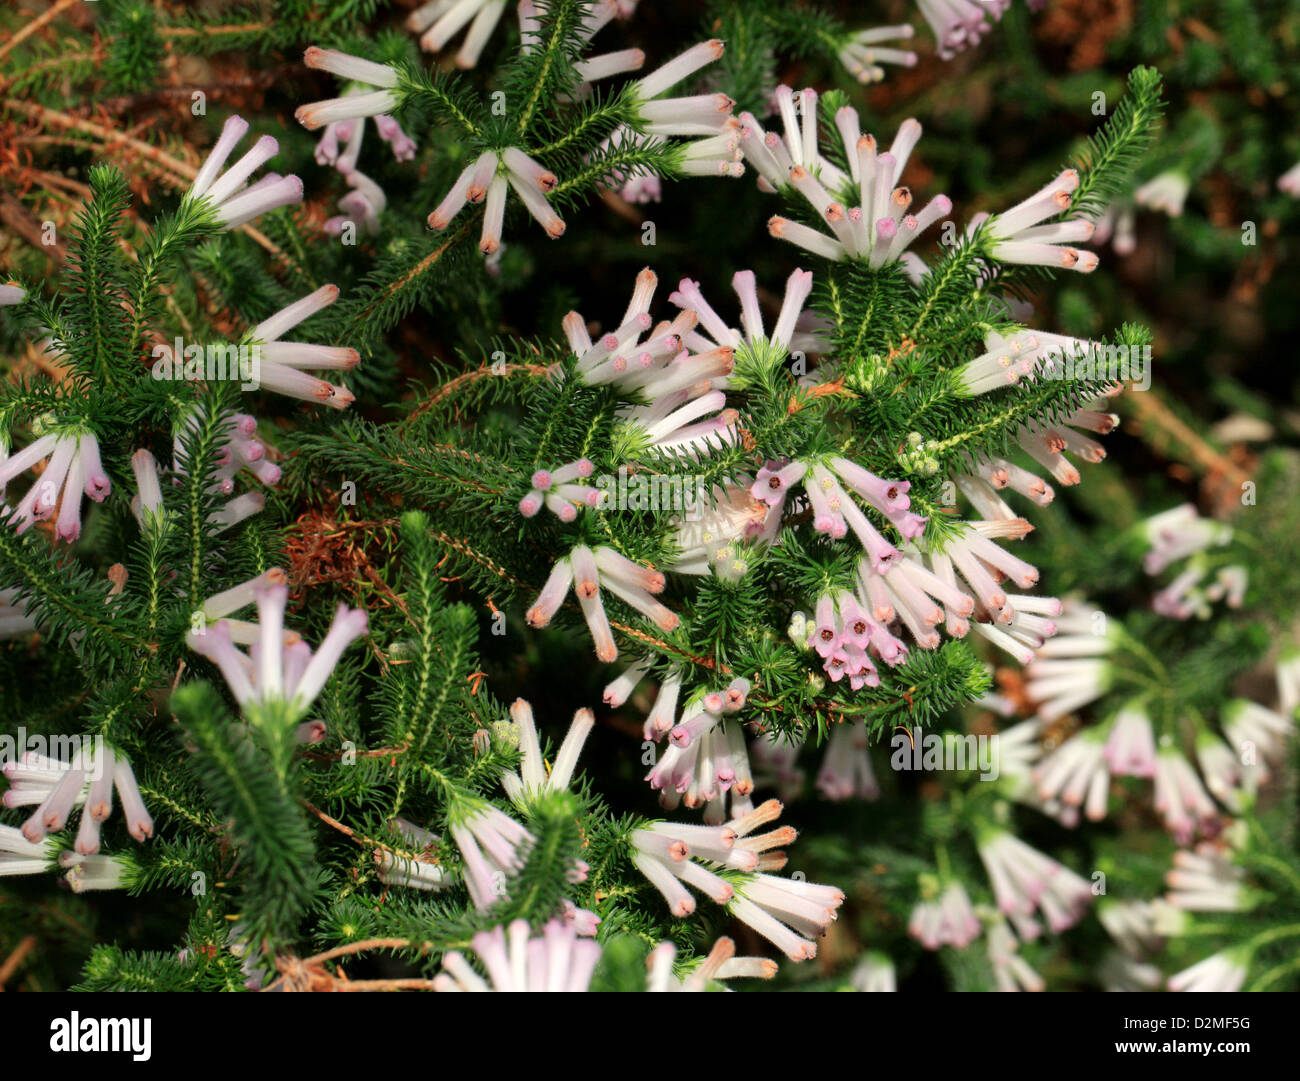 Une Cape Heather, Erica verticillata, Ericaceae. La Province du Cap, Afrique du Sud. Éteint à l'état sauvage. Banque D'Images